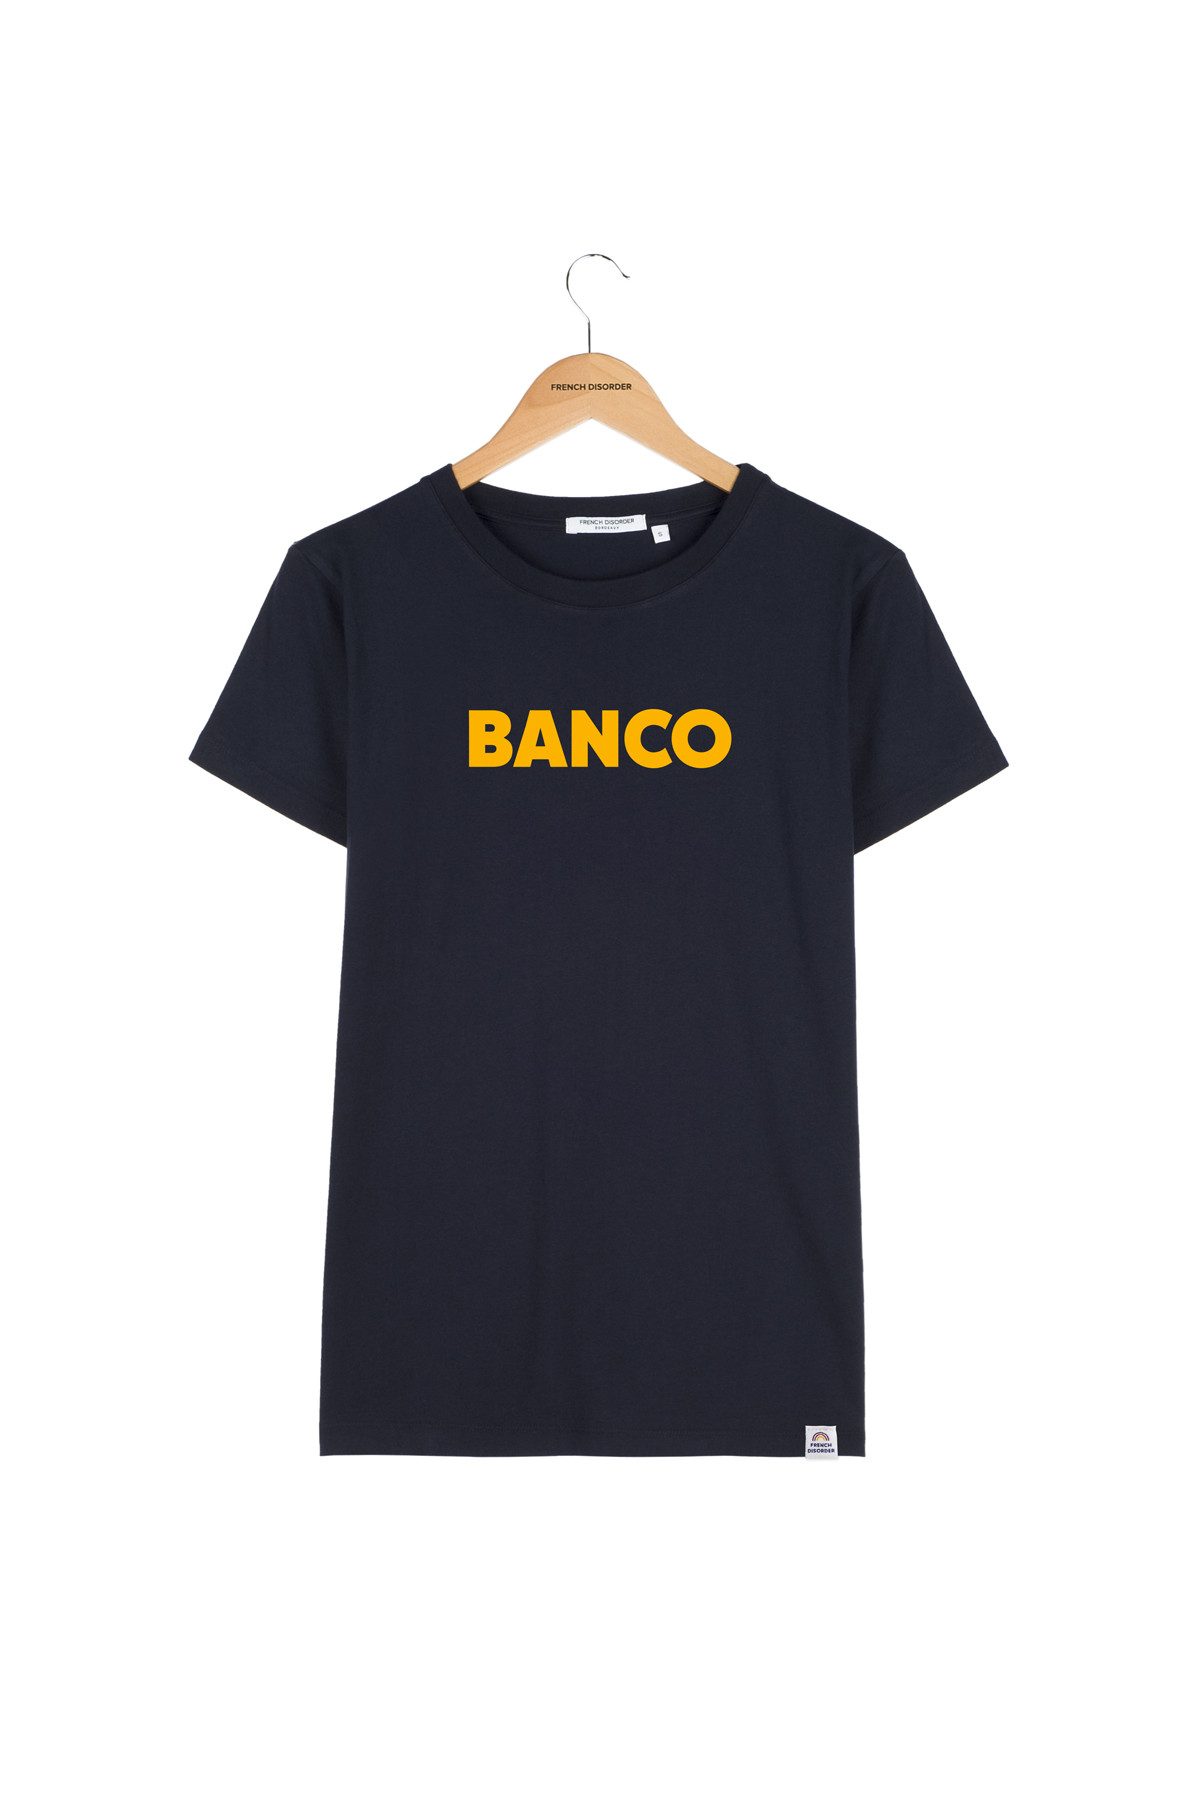 Tshirt BANCO French Disorder